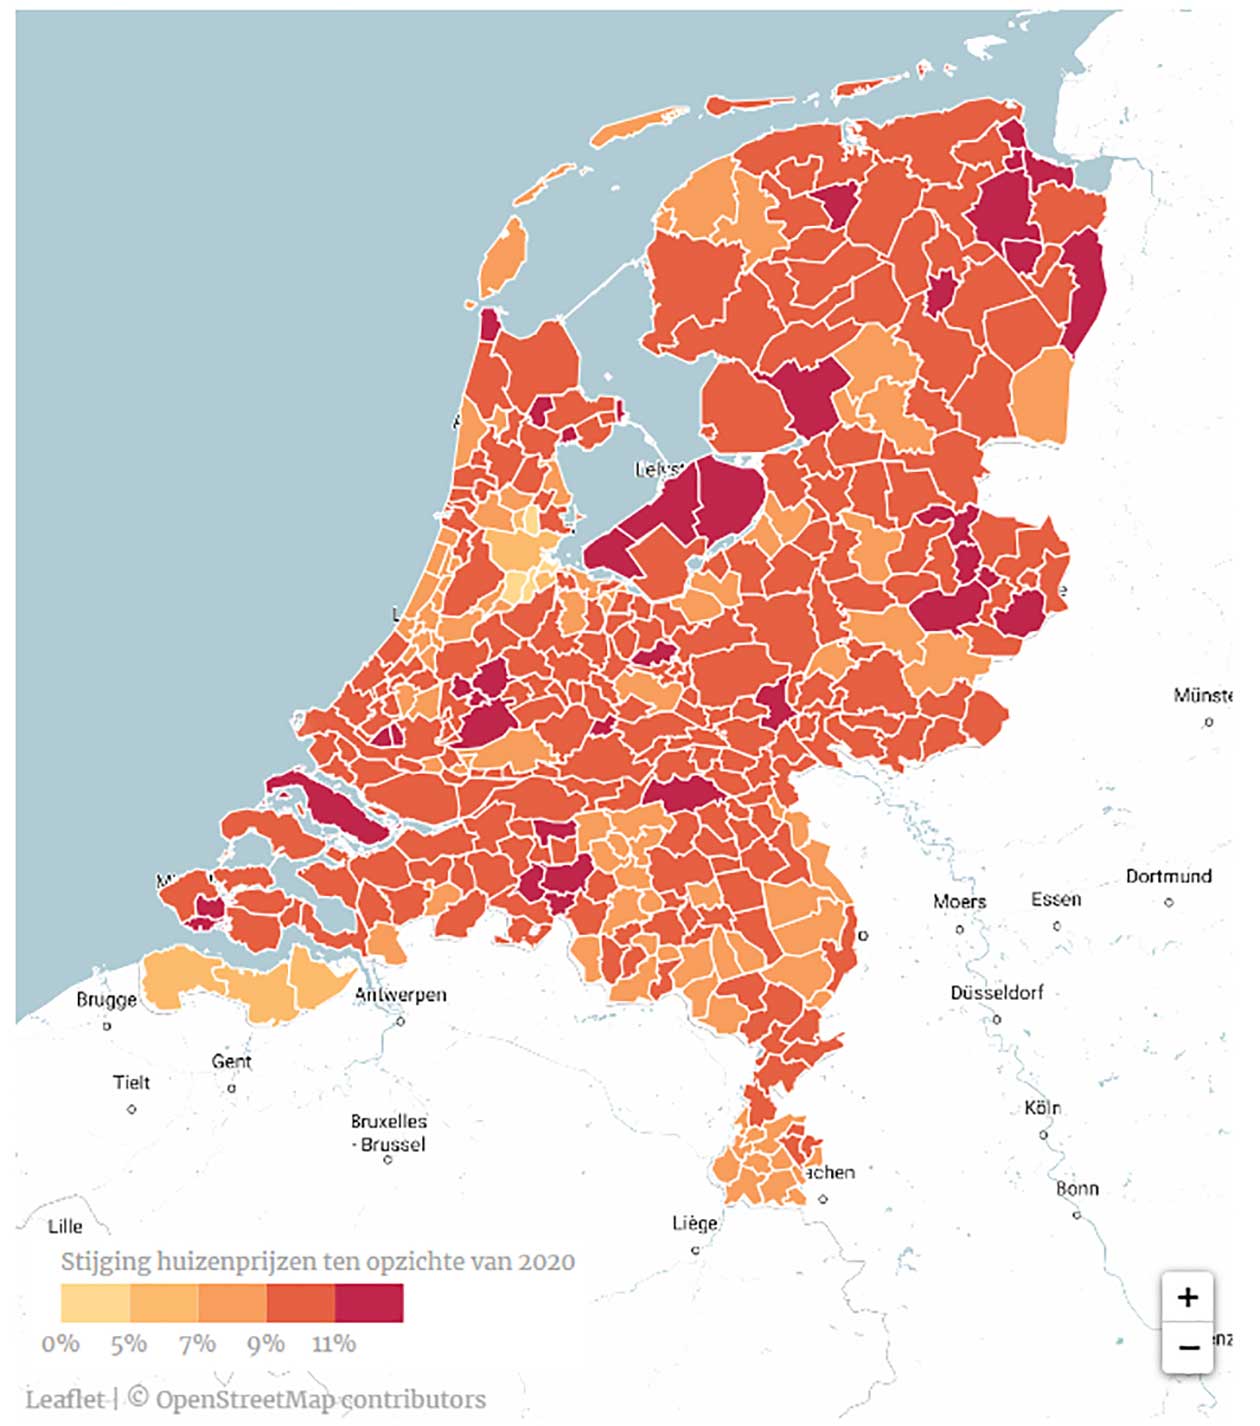 Huizenprijzen in Nederland